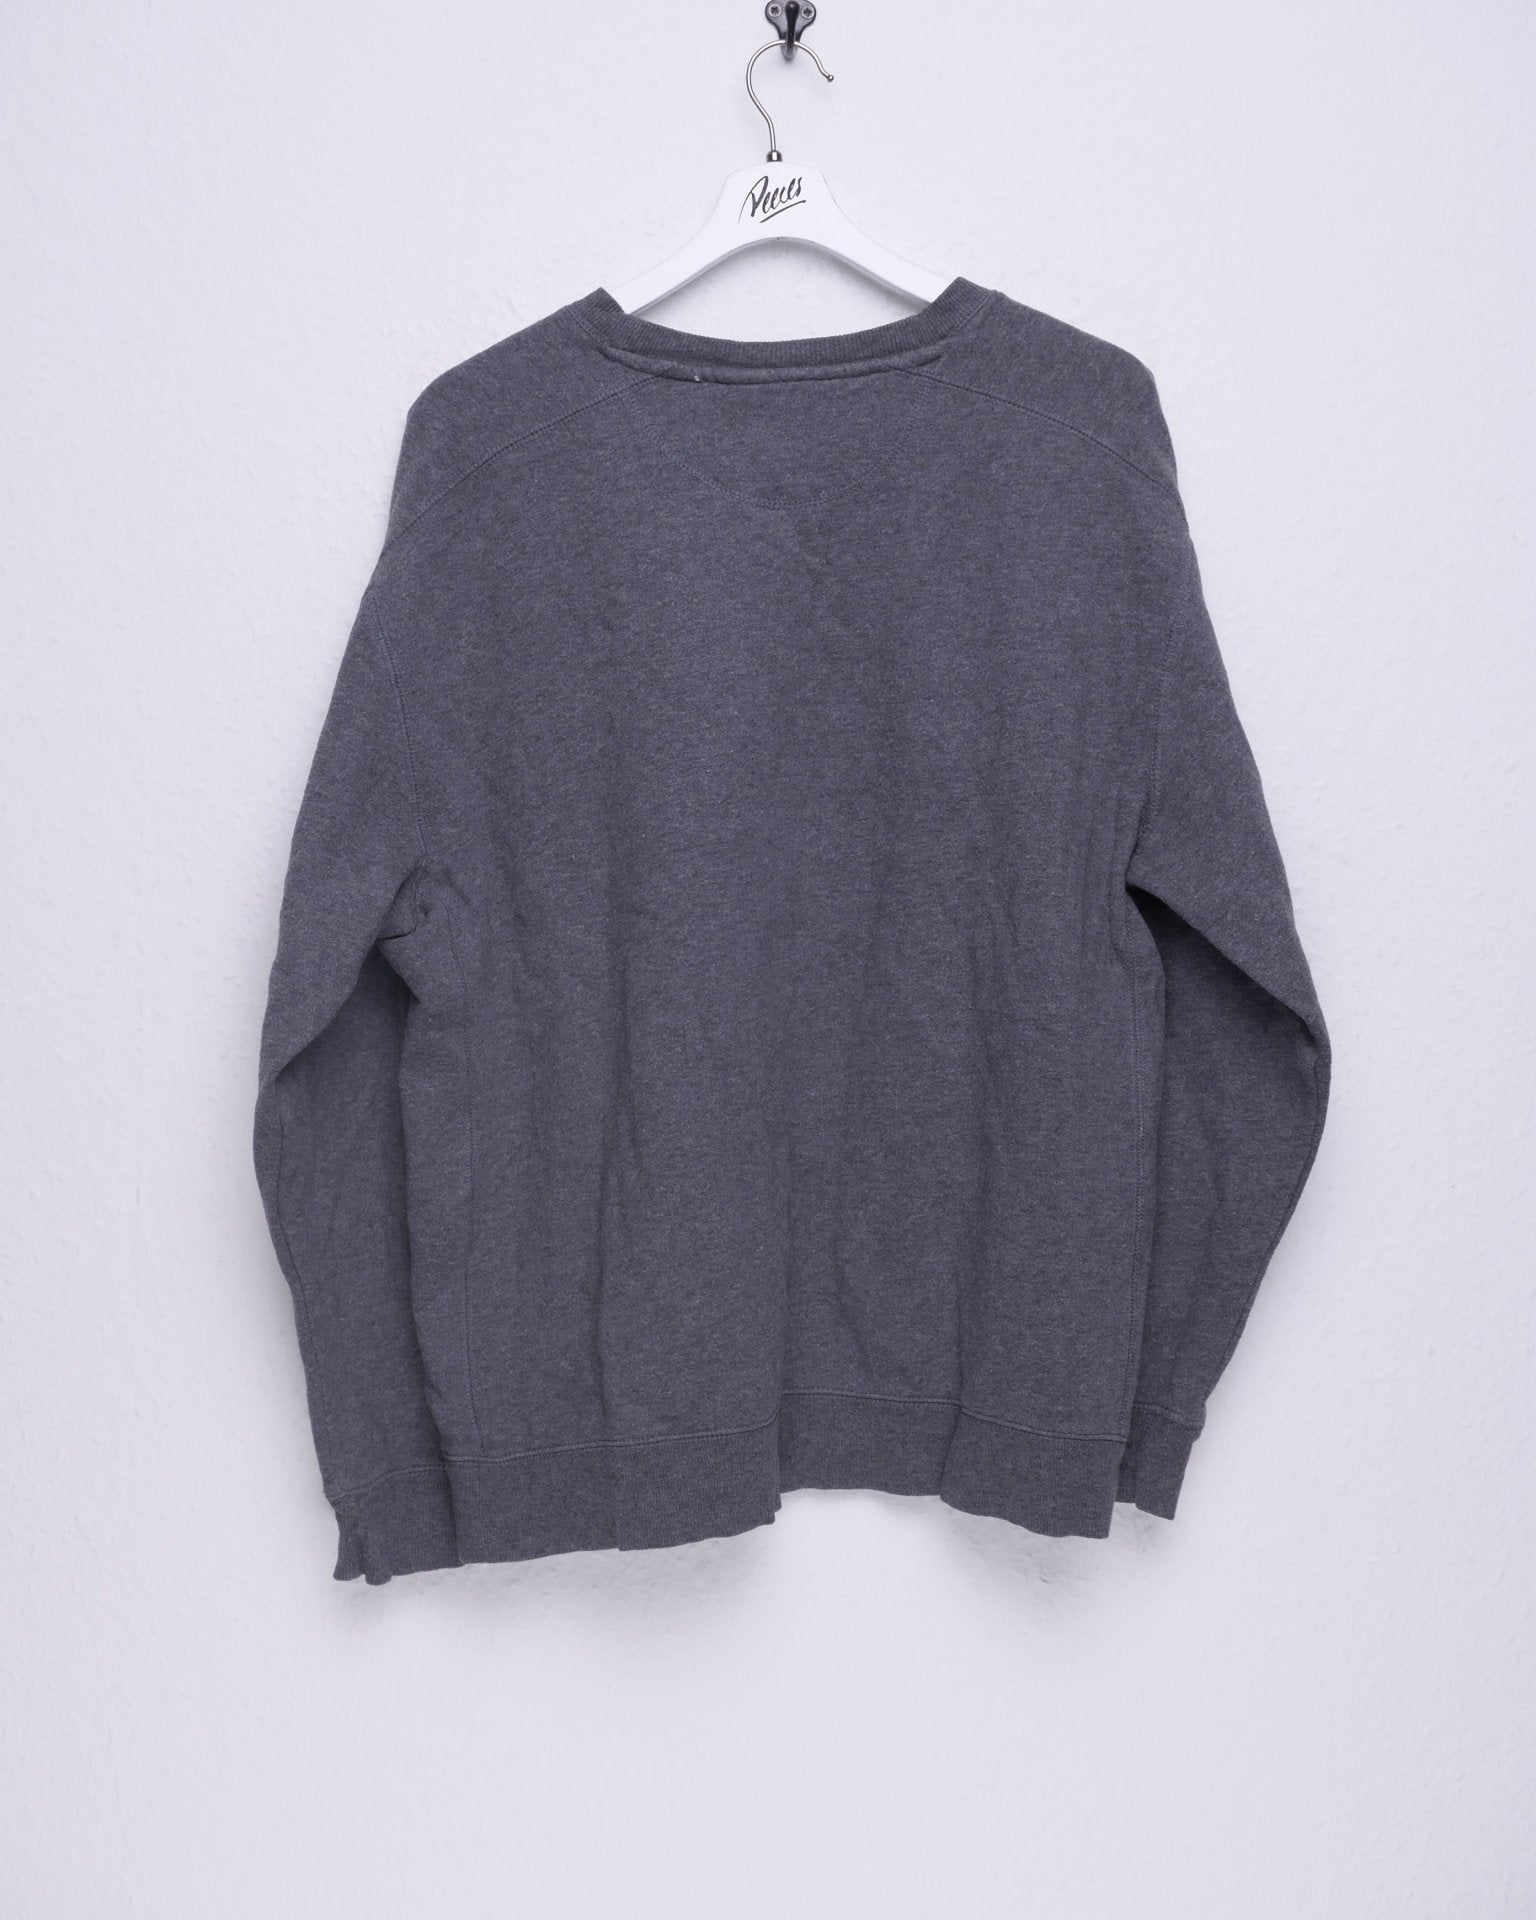 Starter embroidered Logo basic grey oversized Sweater - Peeces